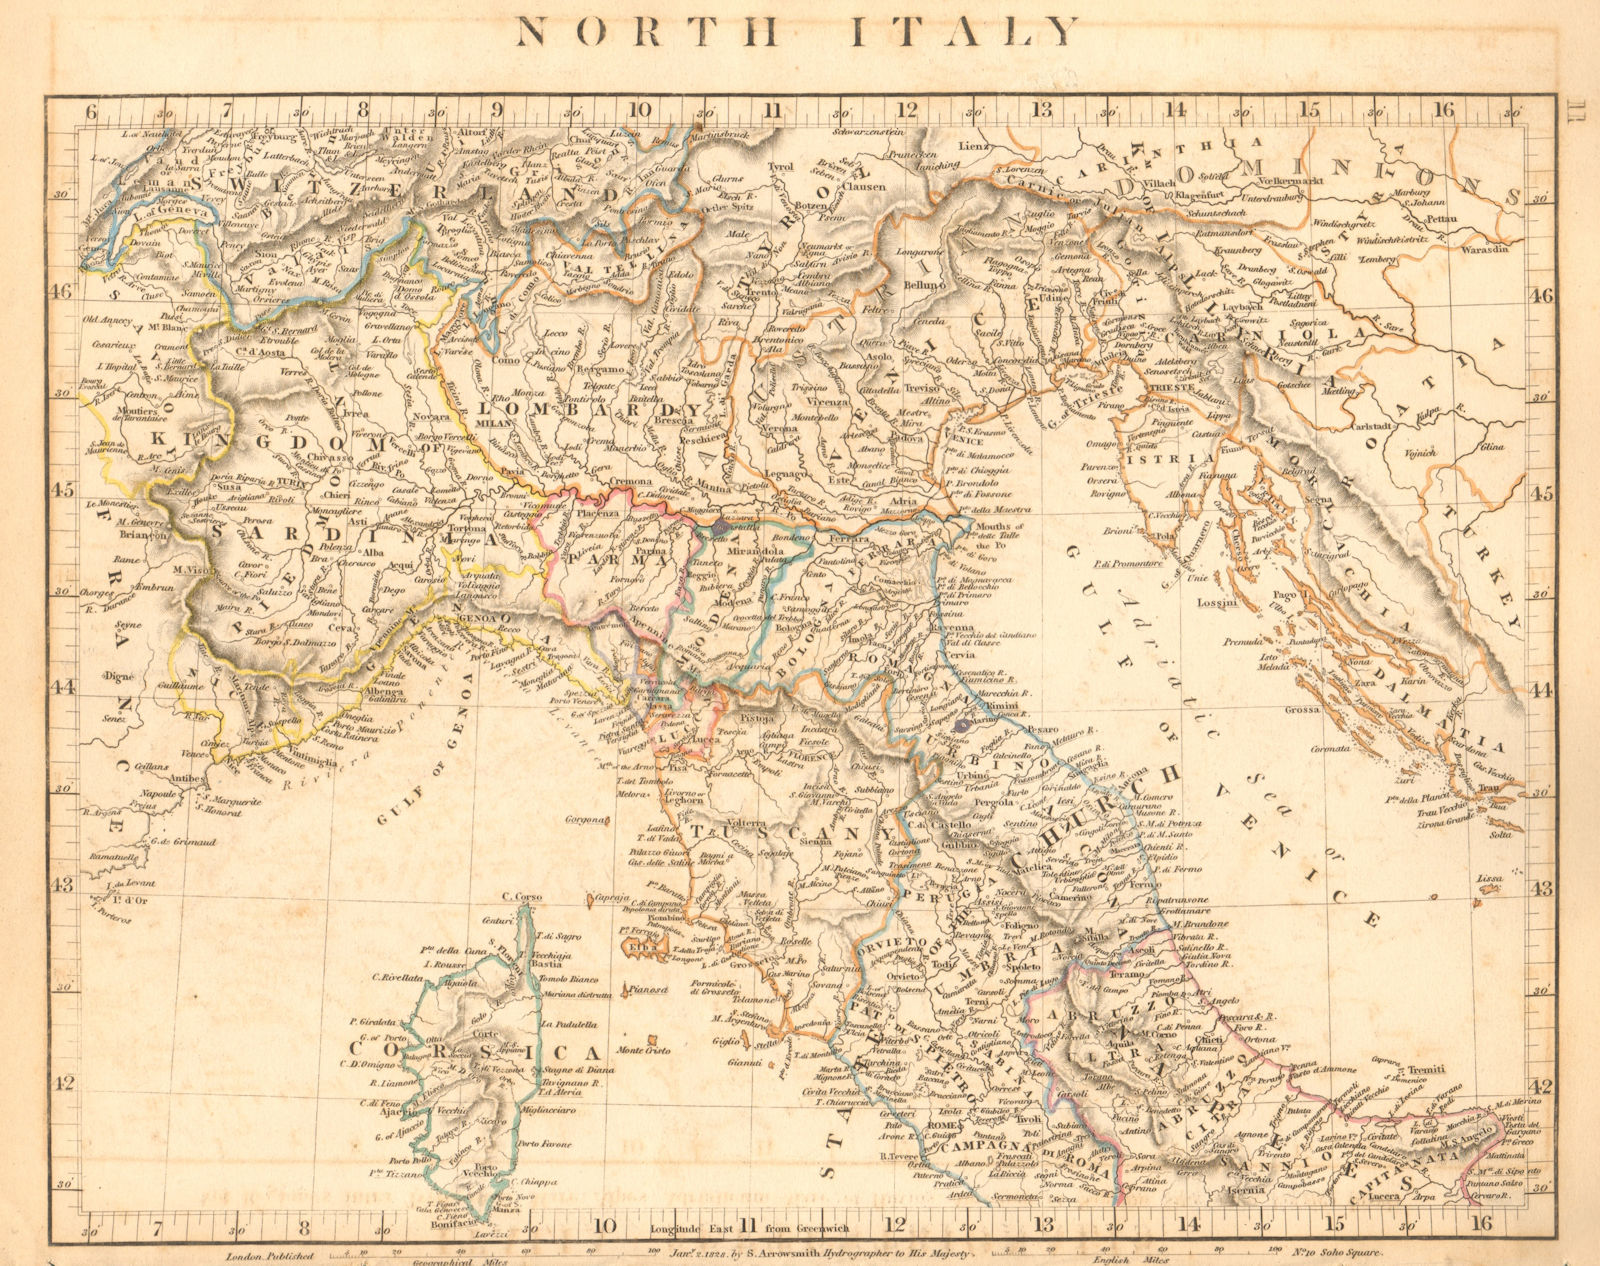 NORTHERN ITALY. Sardinia Lombardy Tuscany Papal States. ARROWSMITH 1828 map